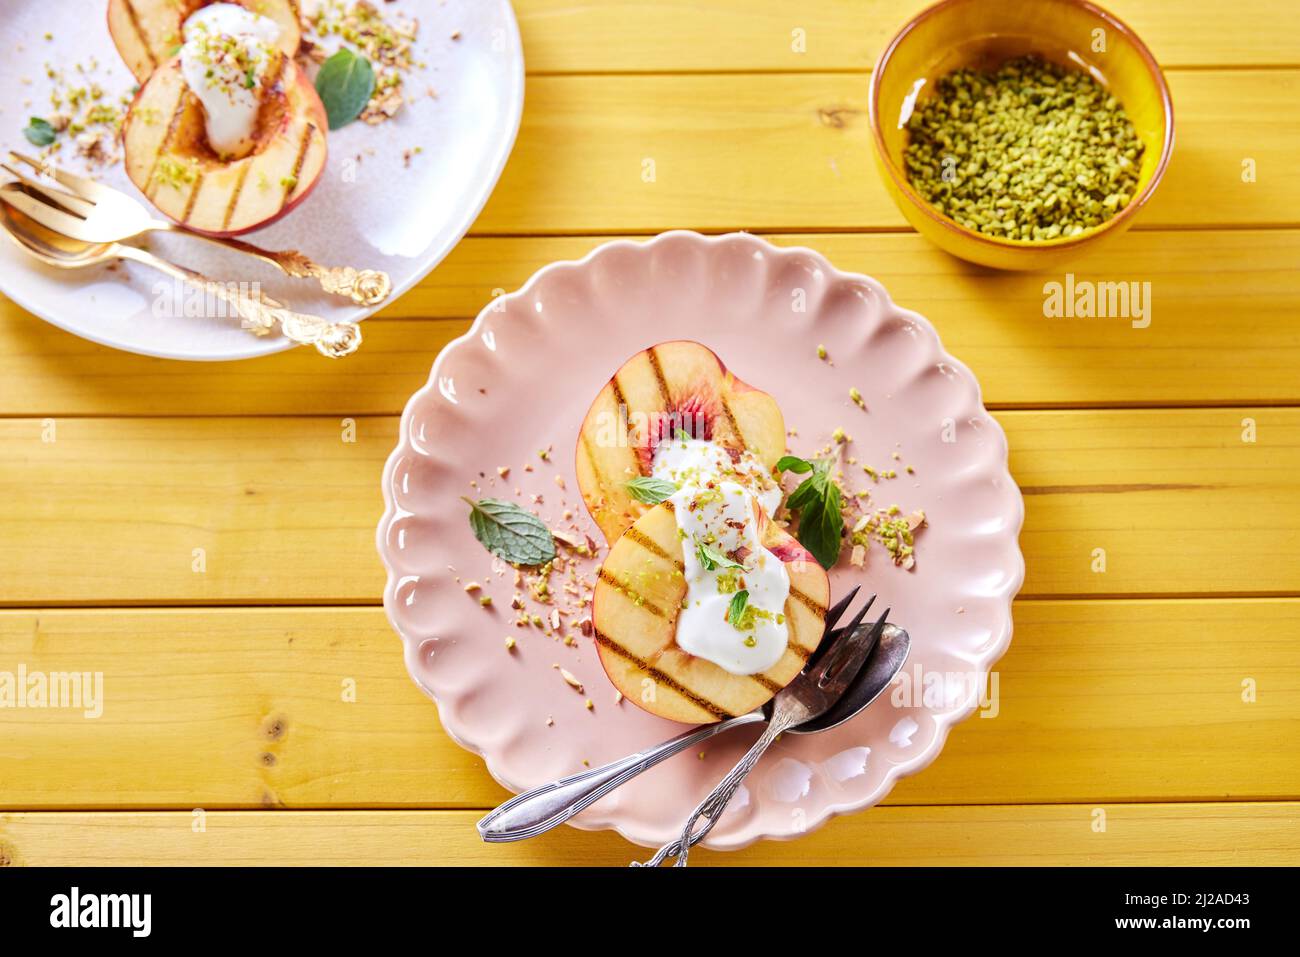 Vue sur l'assiette avec de délicieuses nectarines sucrées avec yaourt et feuilles de menthe servies sur une table en bois avec un bol de pistaches Banque D'Images